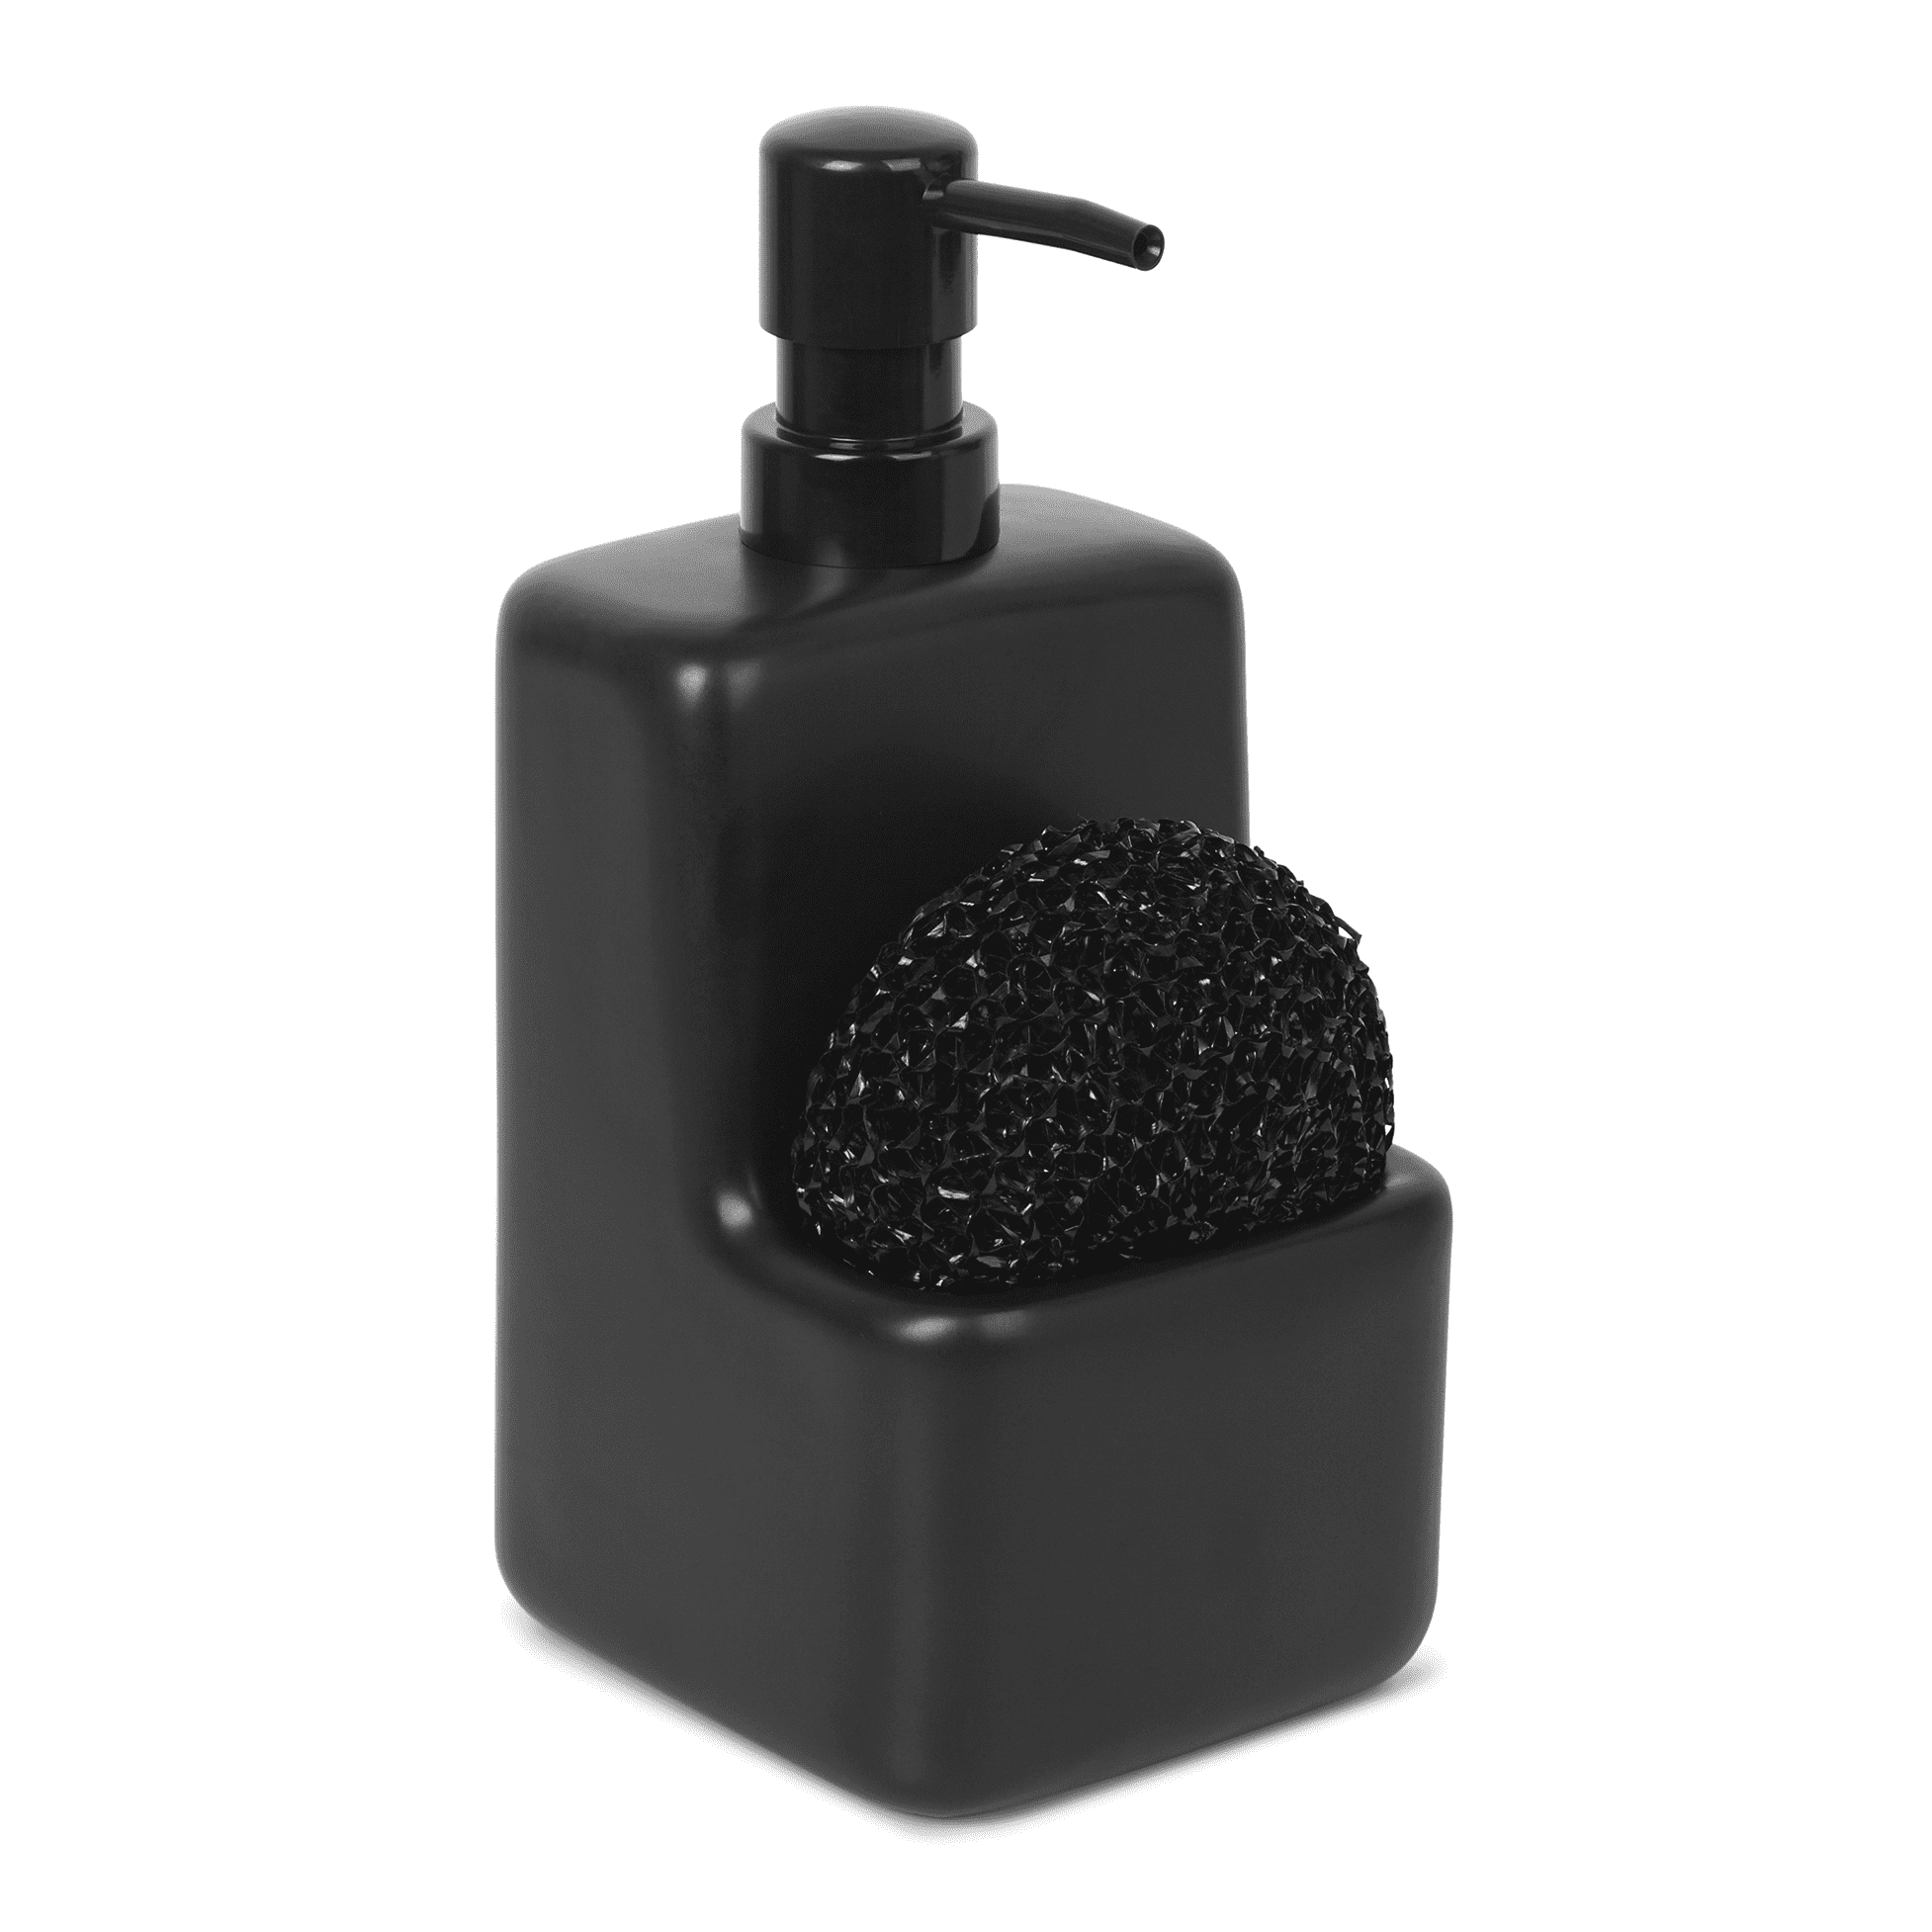 Mainstays Ceramic Liquid Soap Pump with Sponge Caddy Black Ceramic 